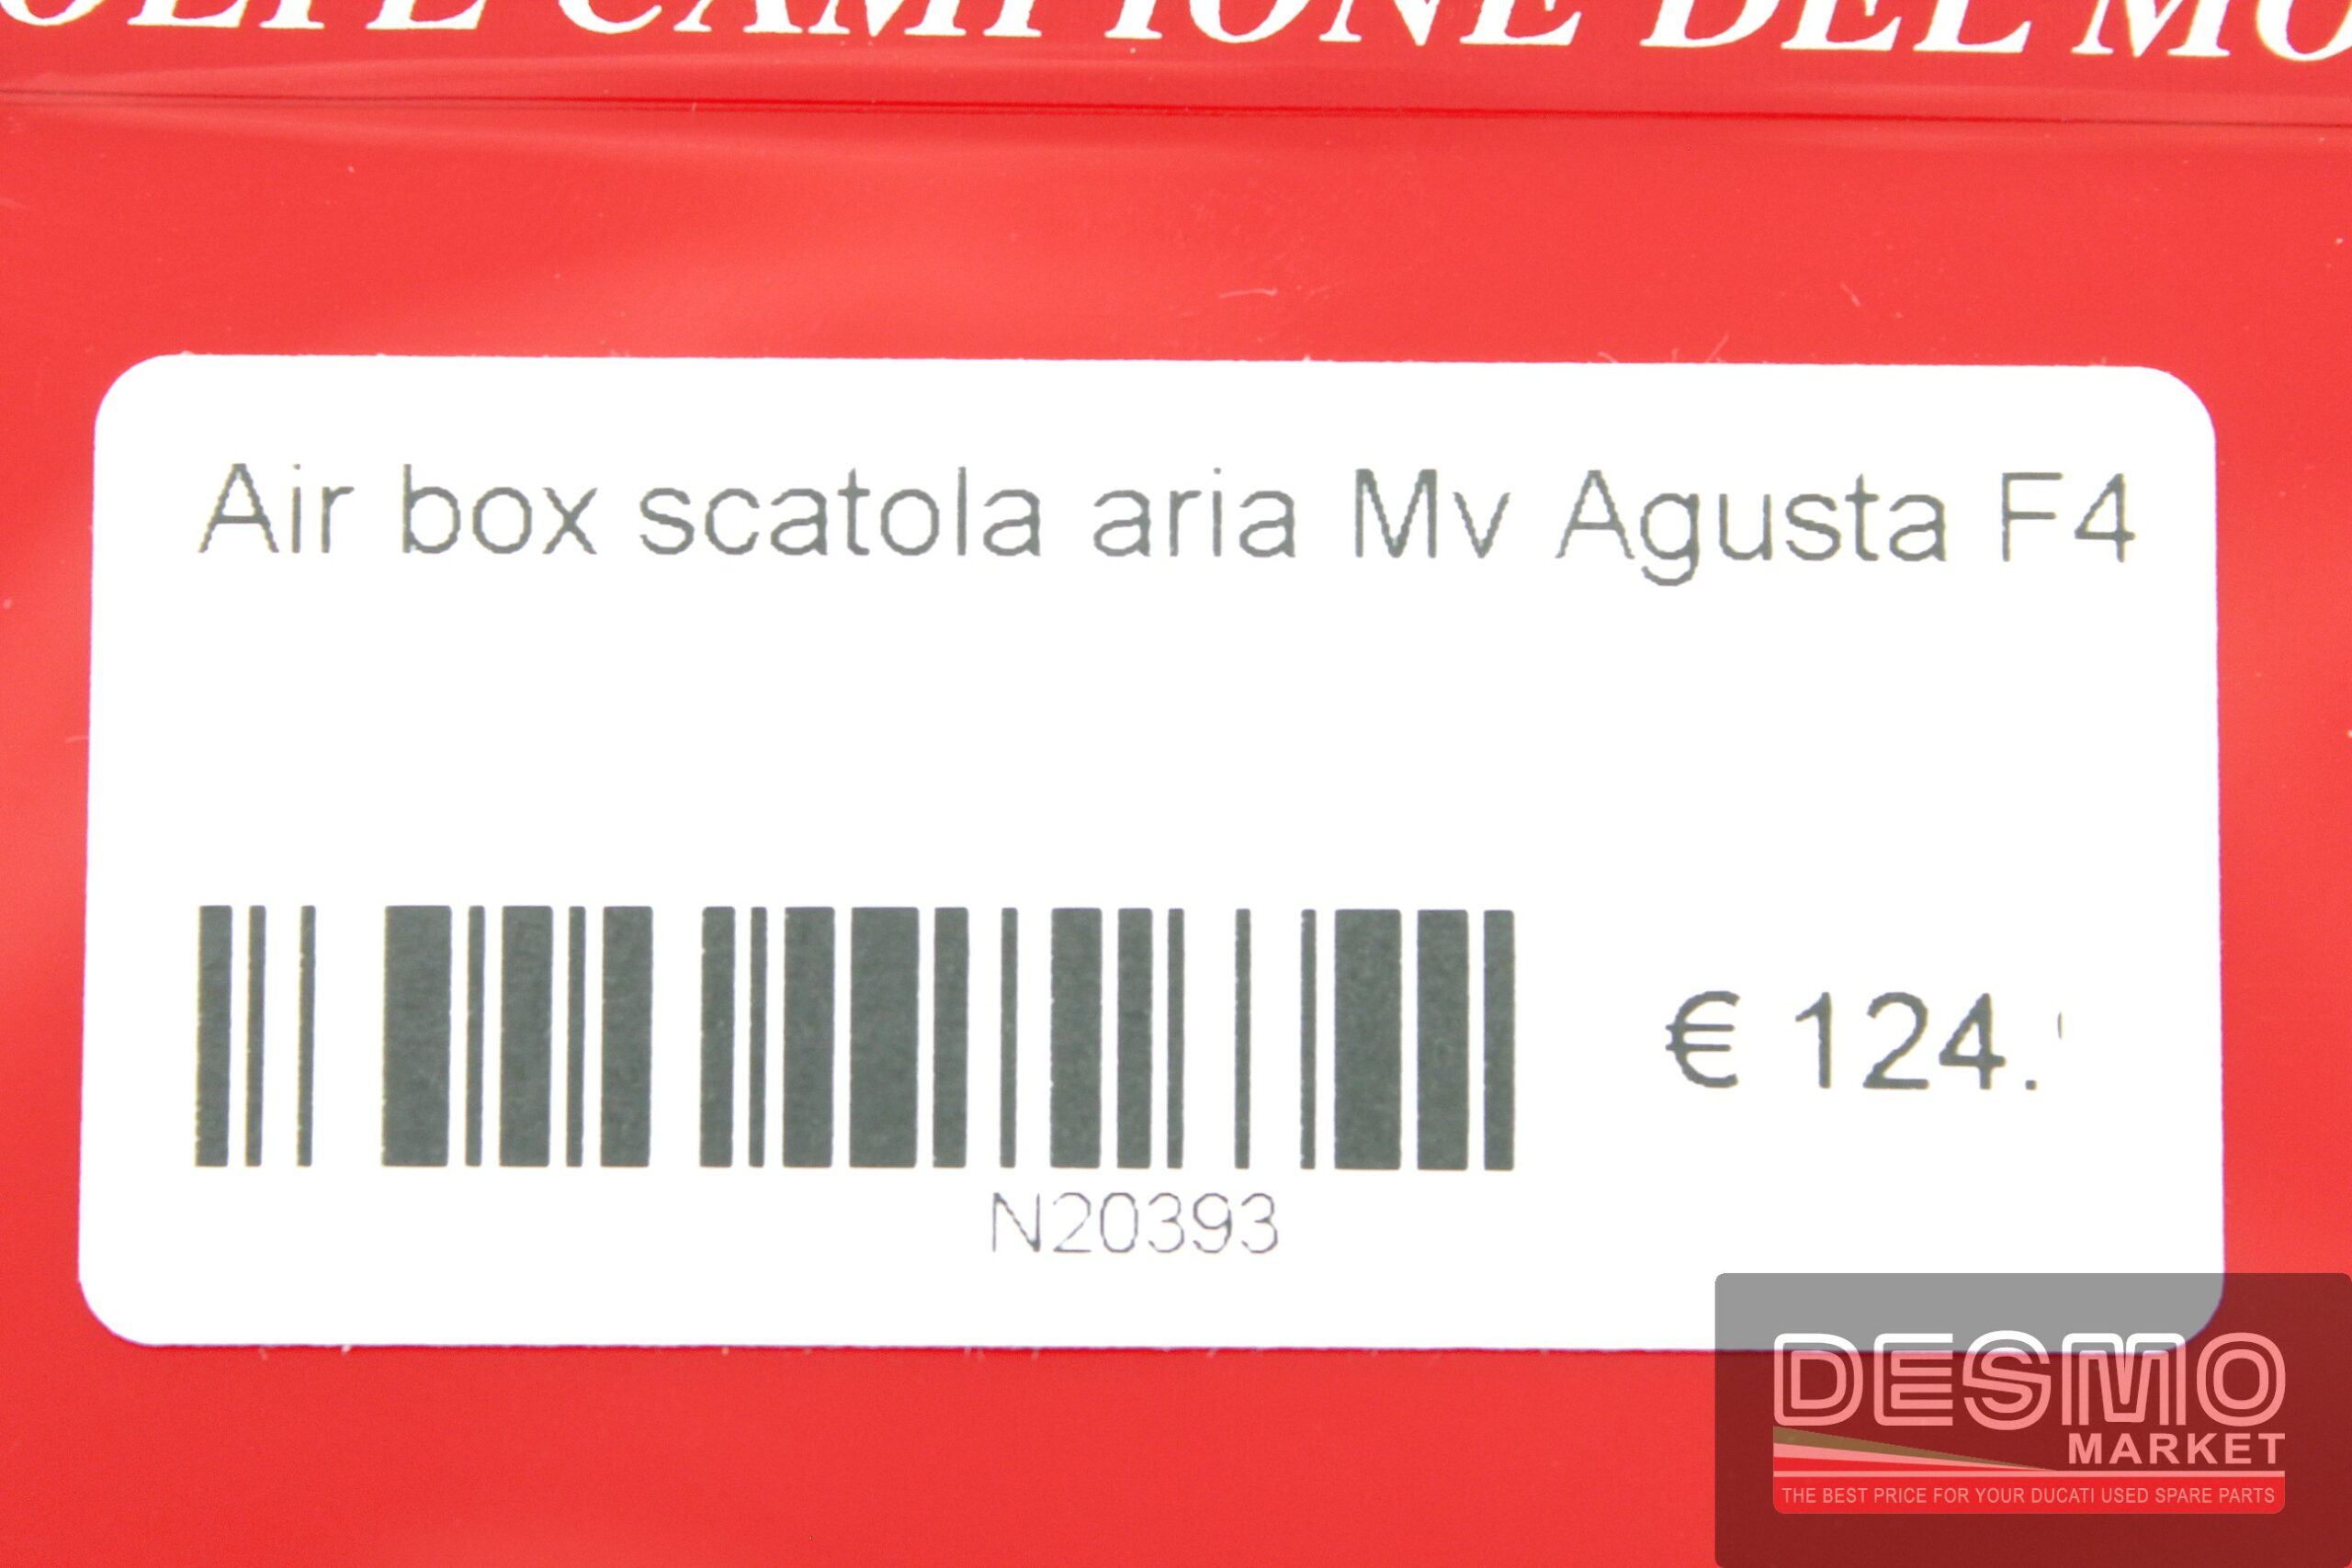 Airbox scatola aria Mv Agusta F4